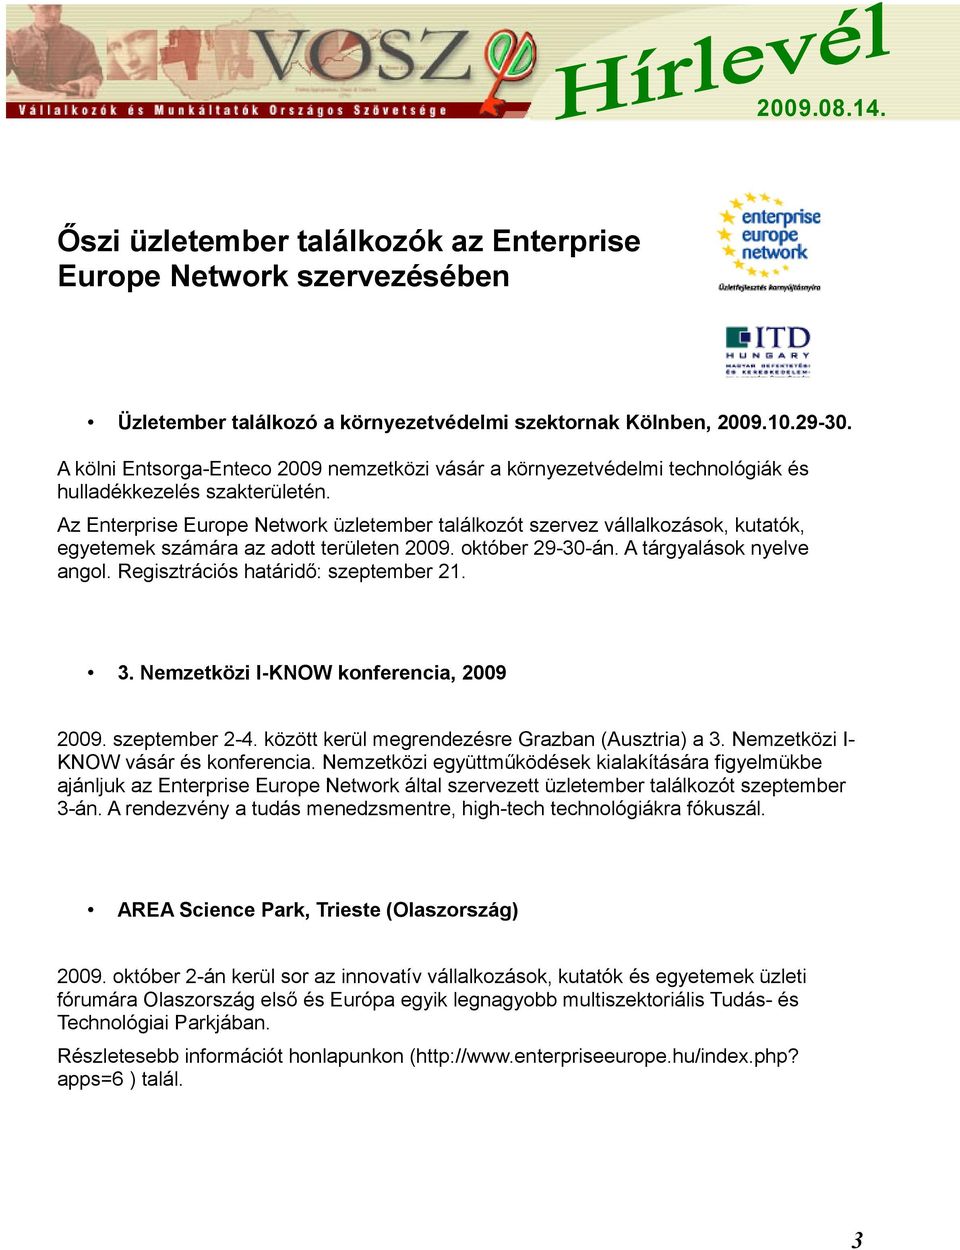 Az Enterprise Europe Network üzletember találkozót szervez vállalkozások, kutatók, egyetemek számára az adott területen 2009. október 29-30-án. A tárgyalások nyelve angol.